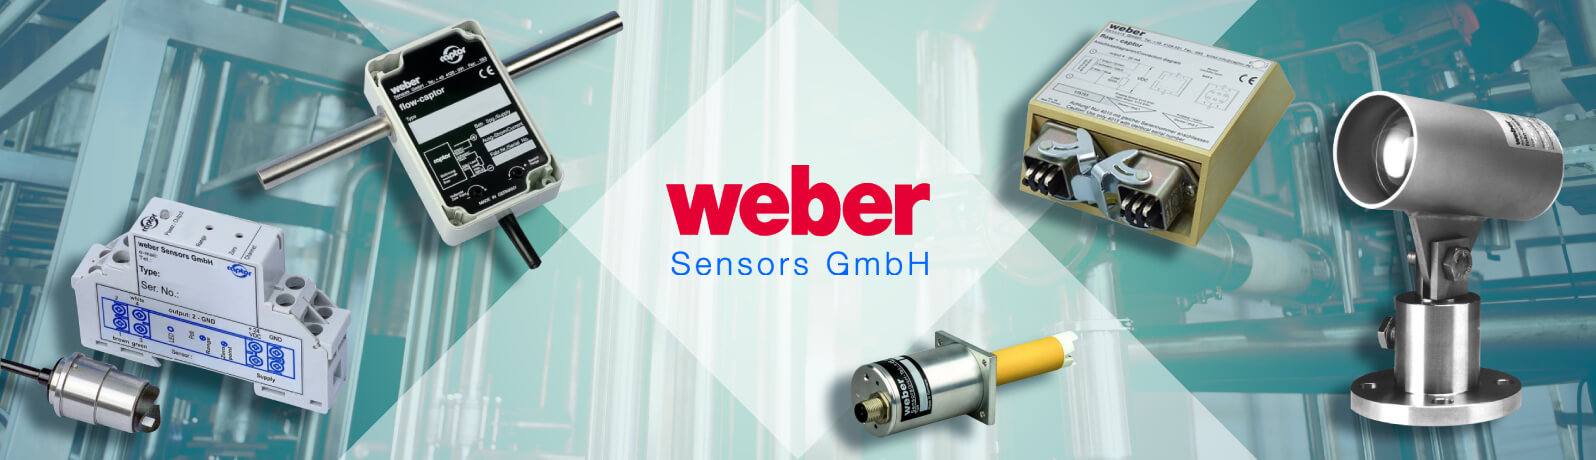 Weber Sensors